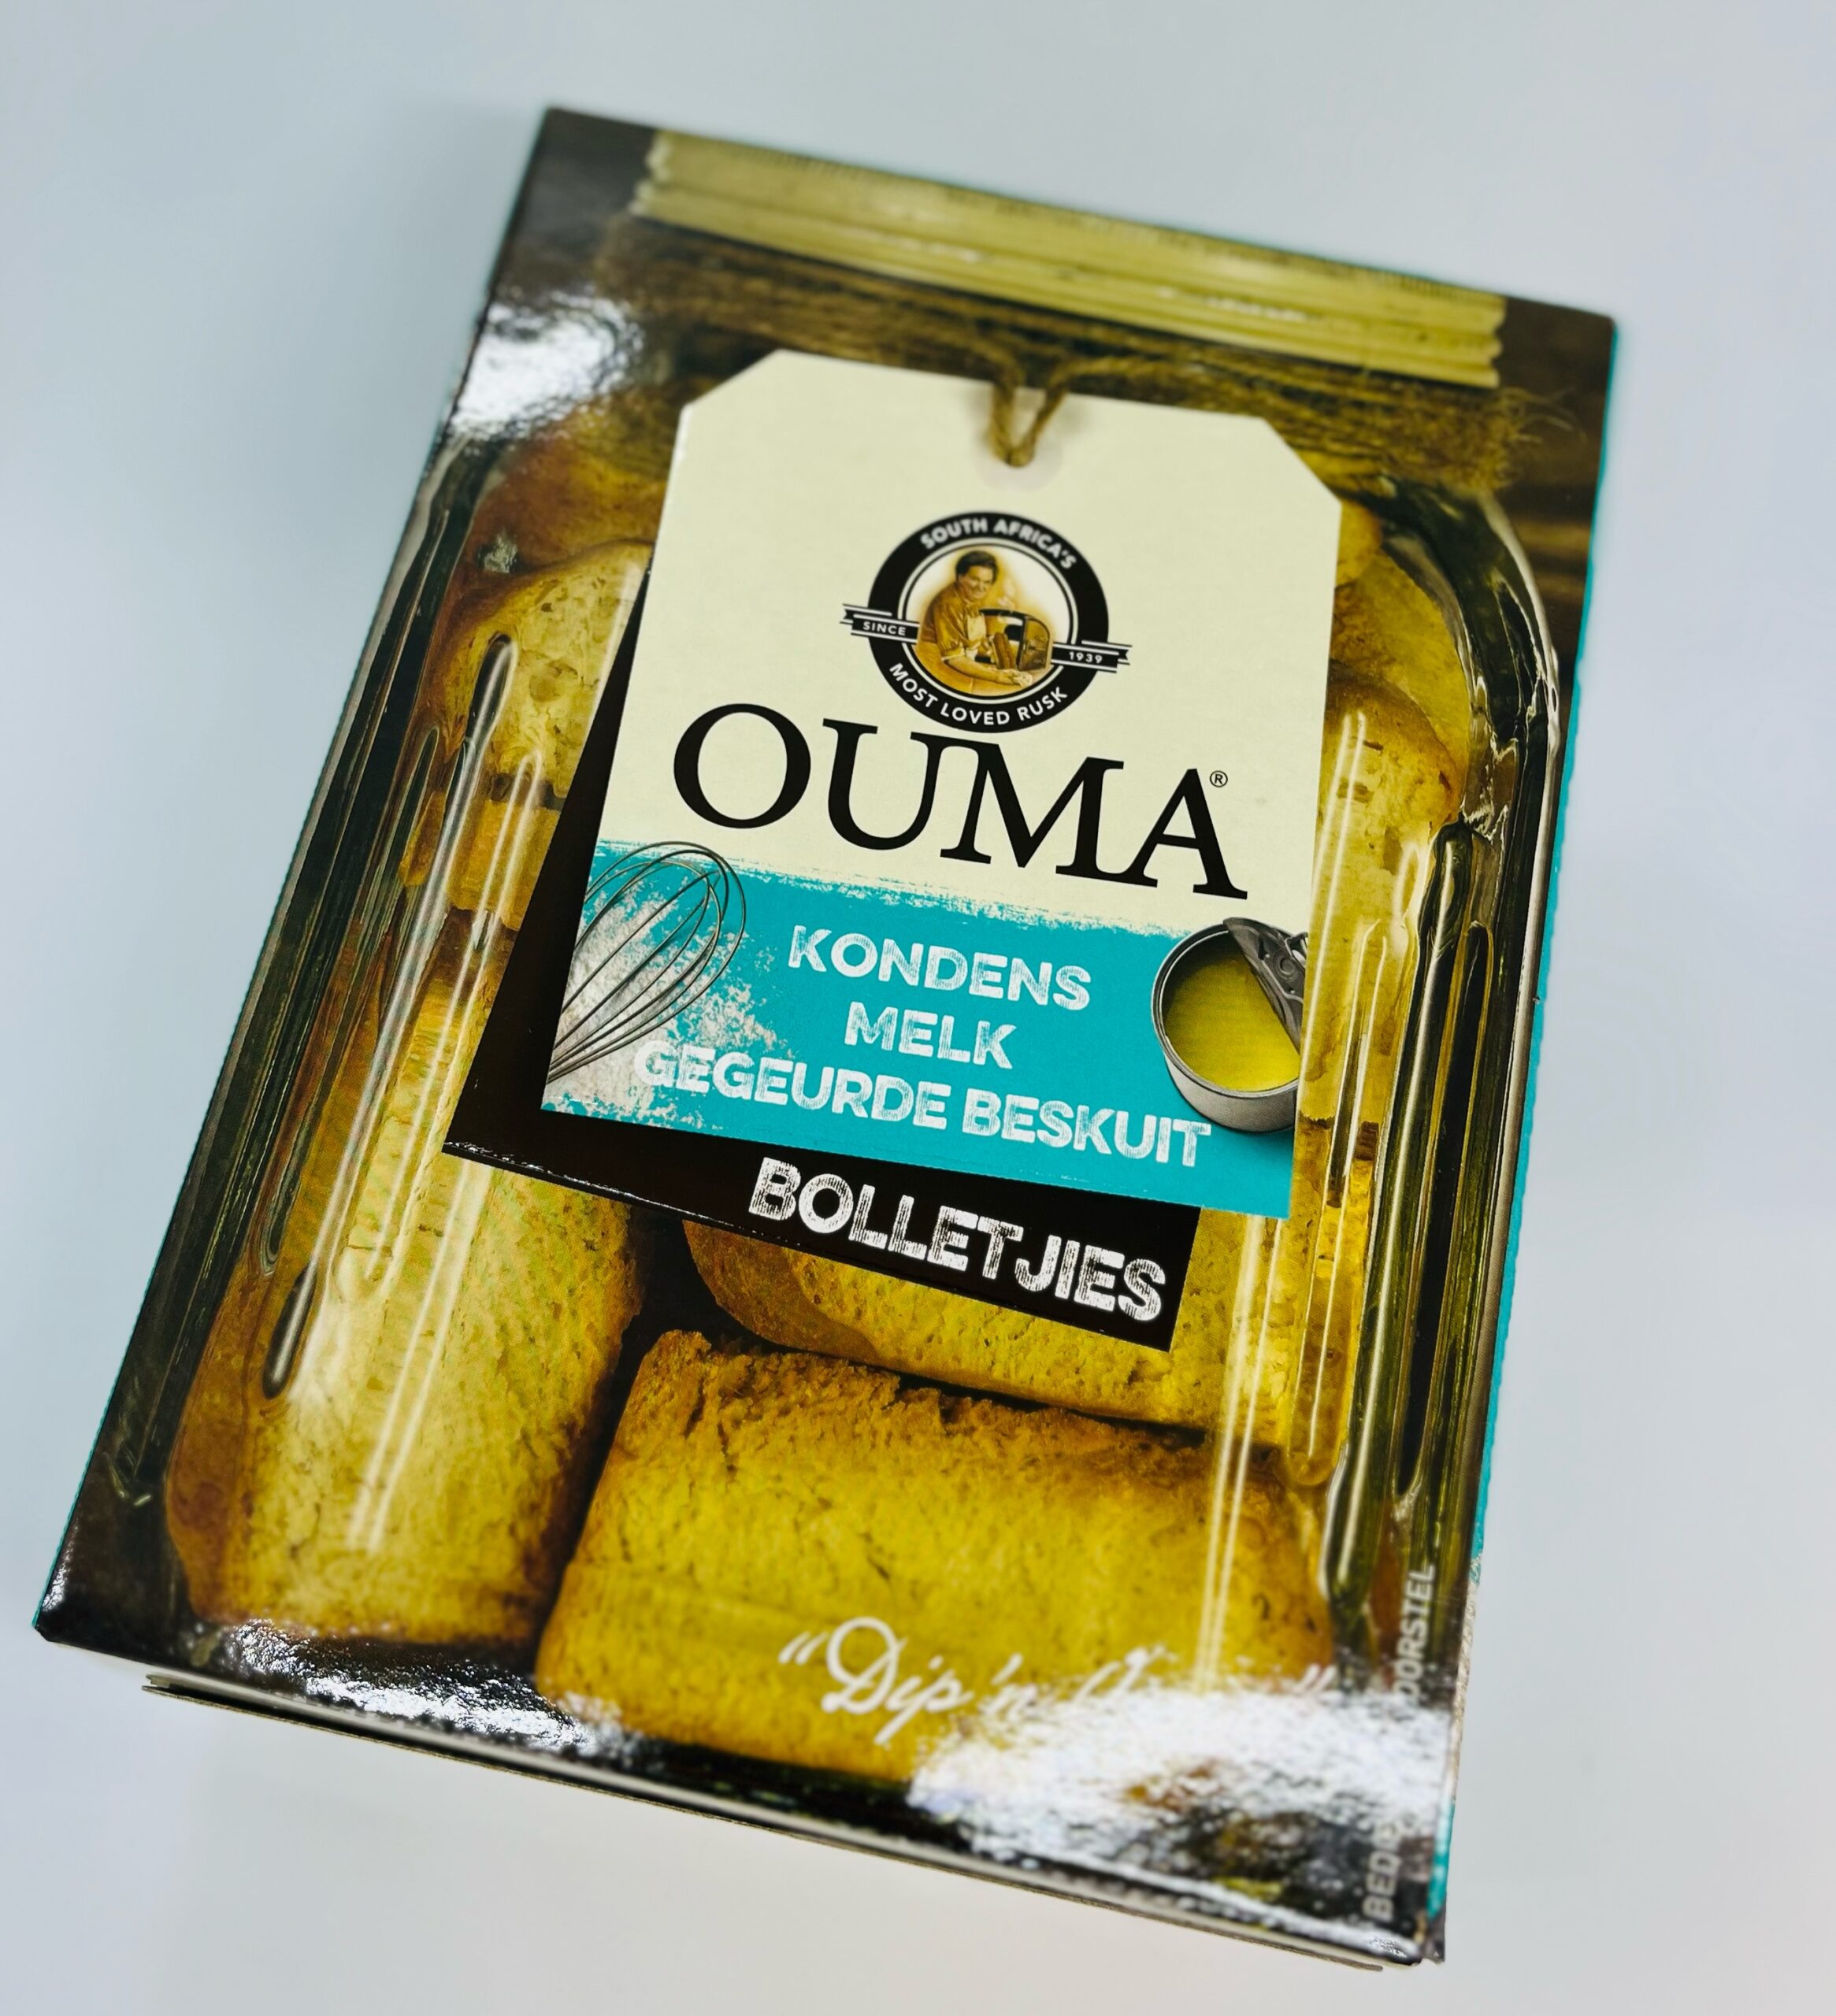 Ouma Condensed Milk 500g